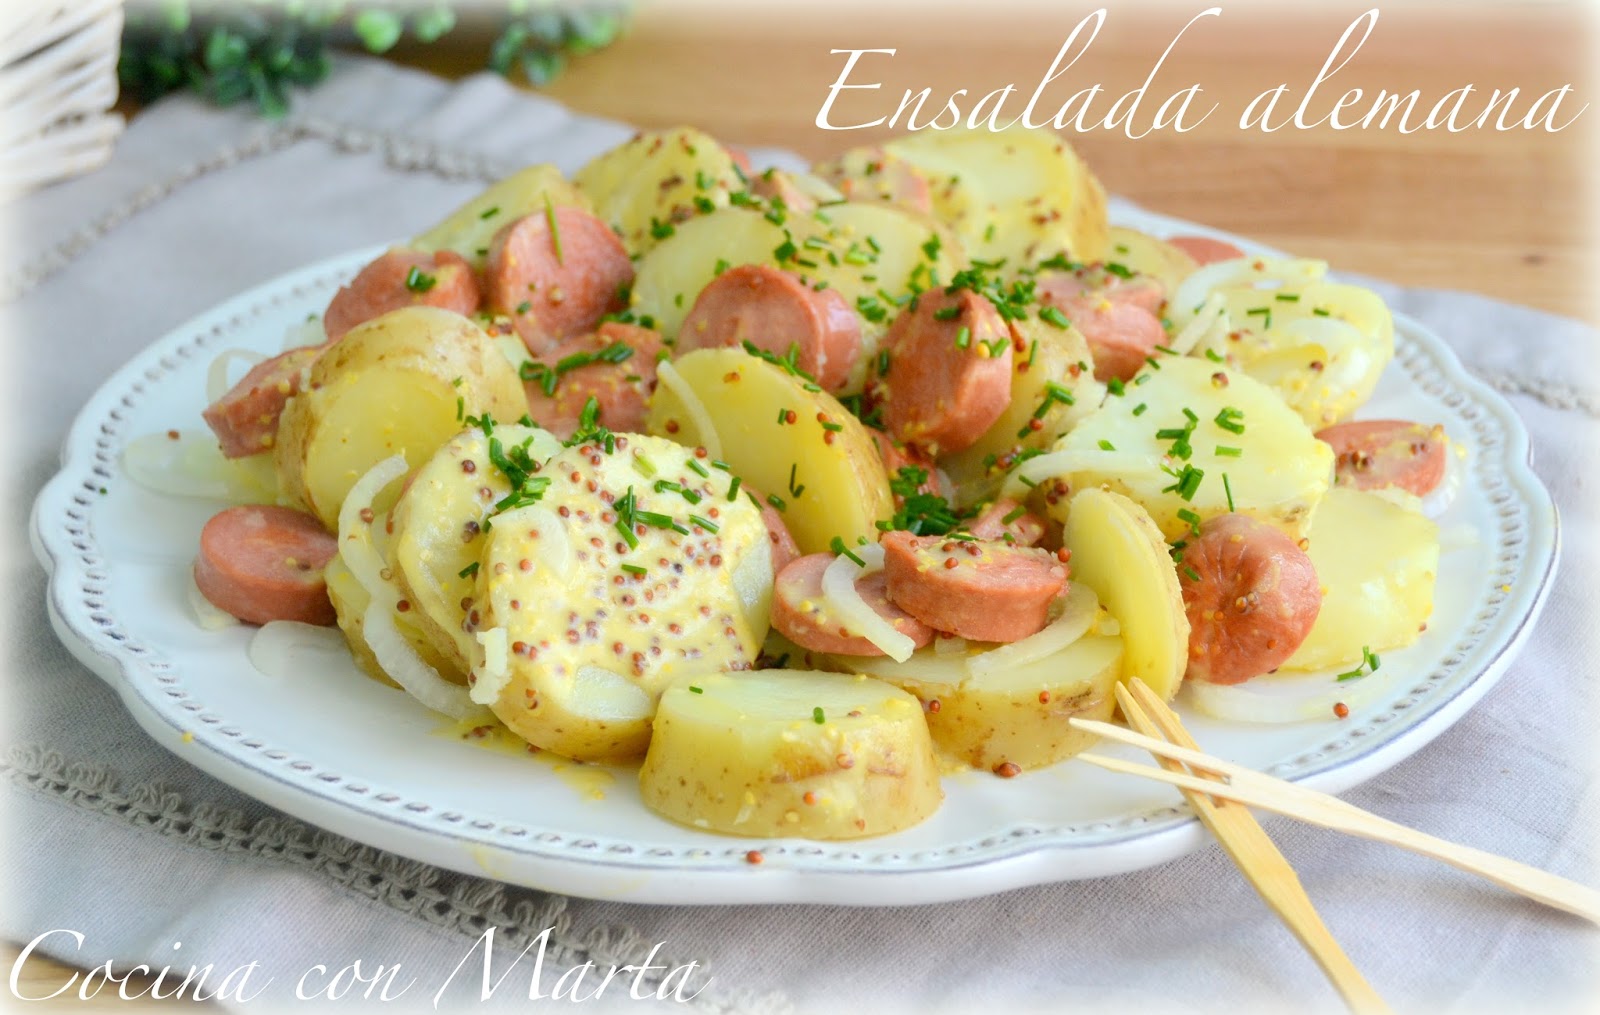 Receta casera de ensalada alemana, con patatas, salchichas y mostaza. Fácil y rápida.